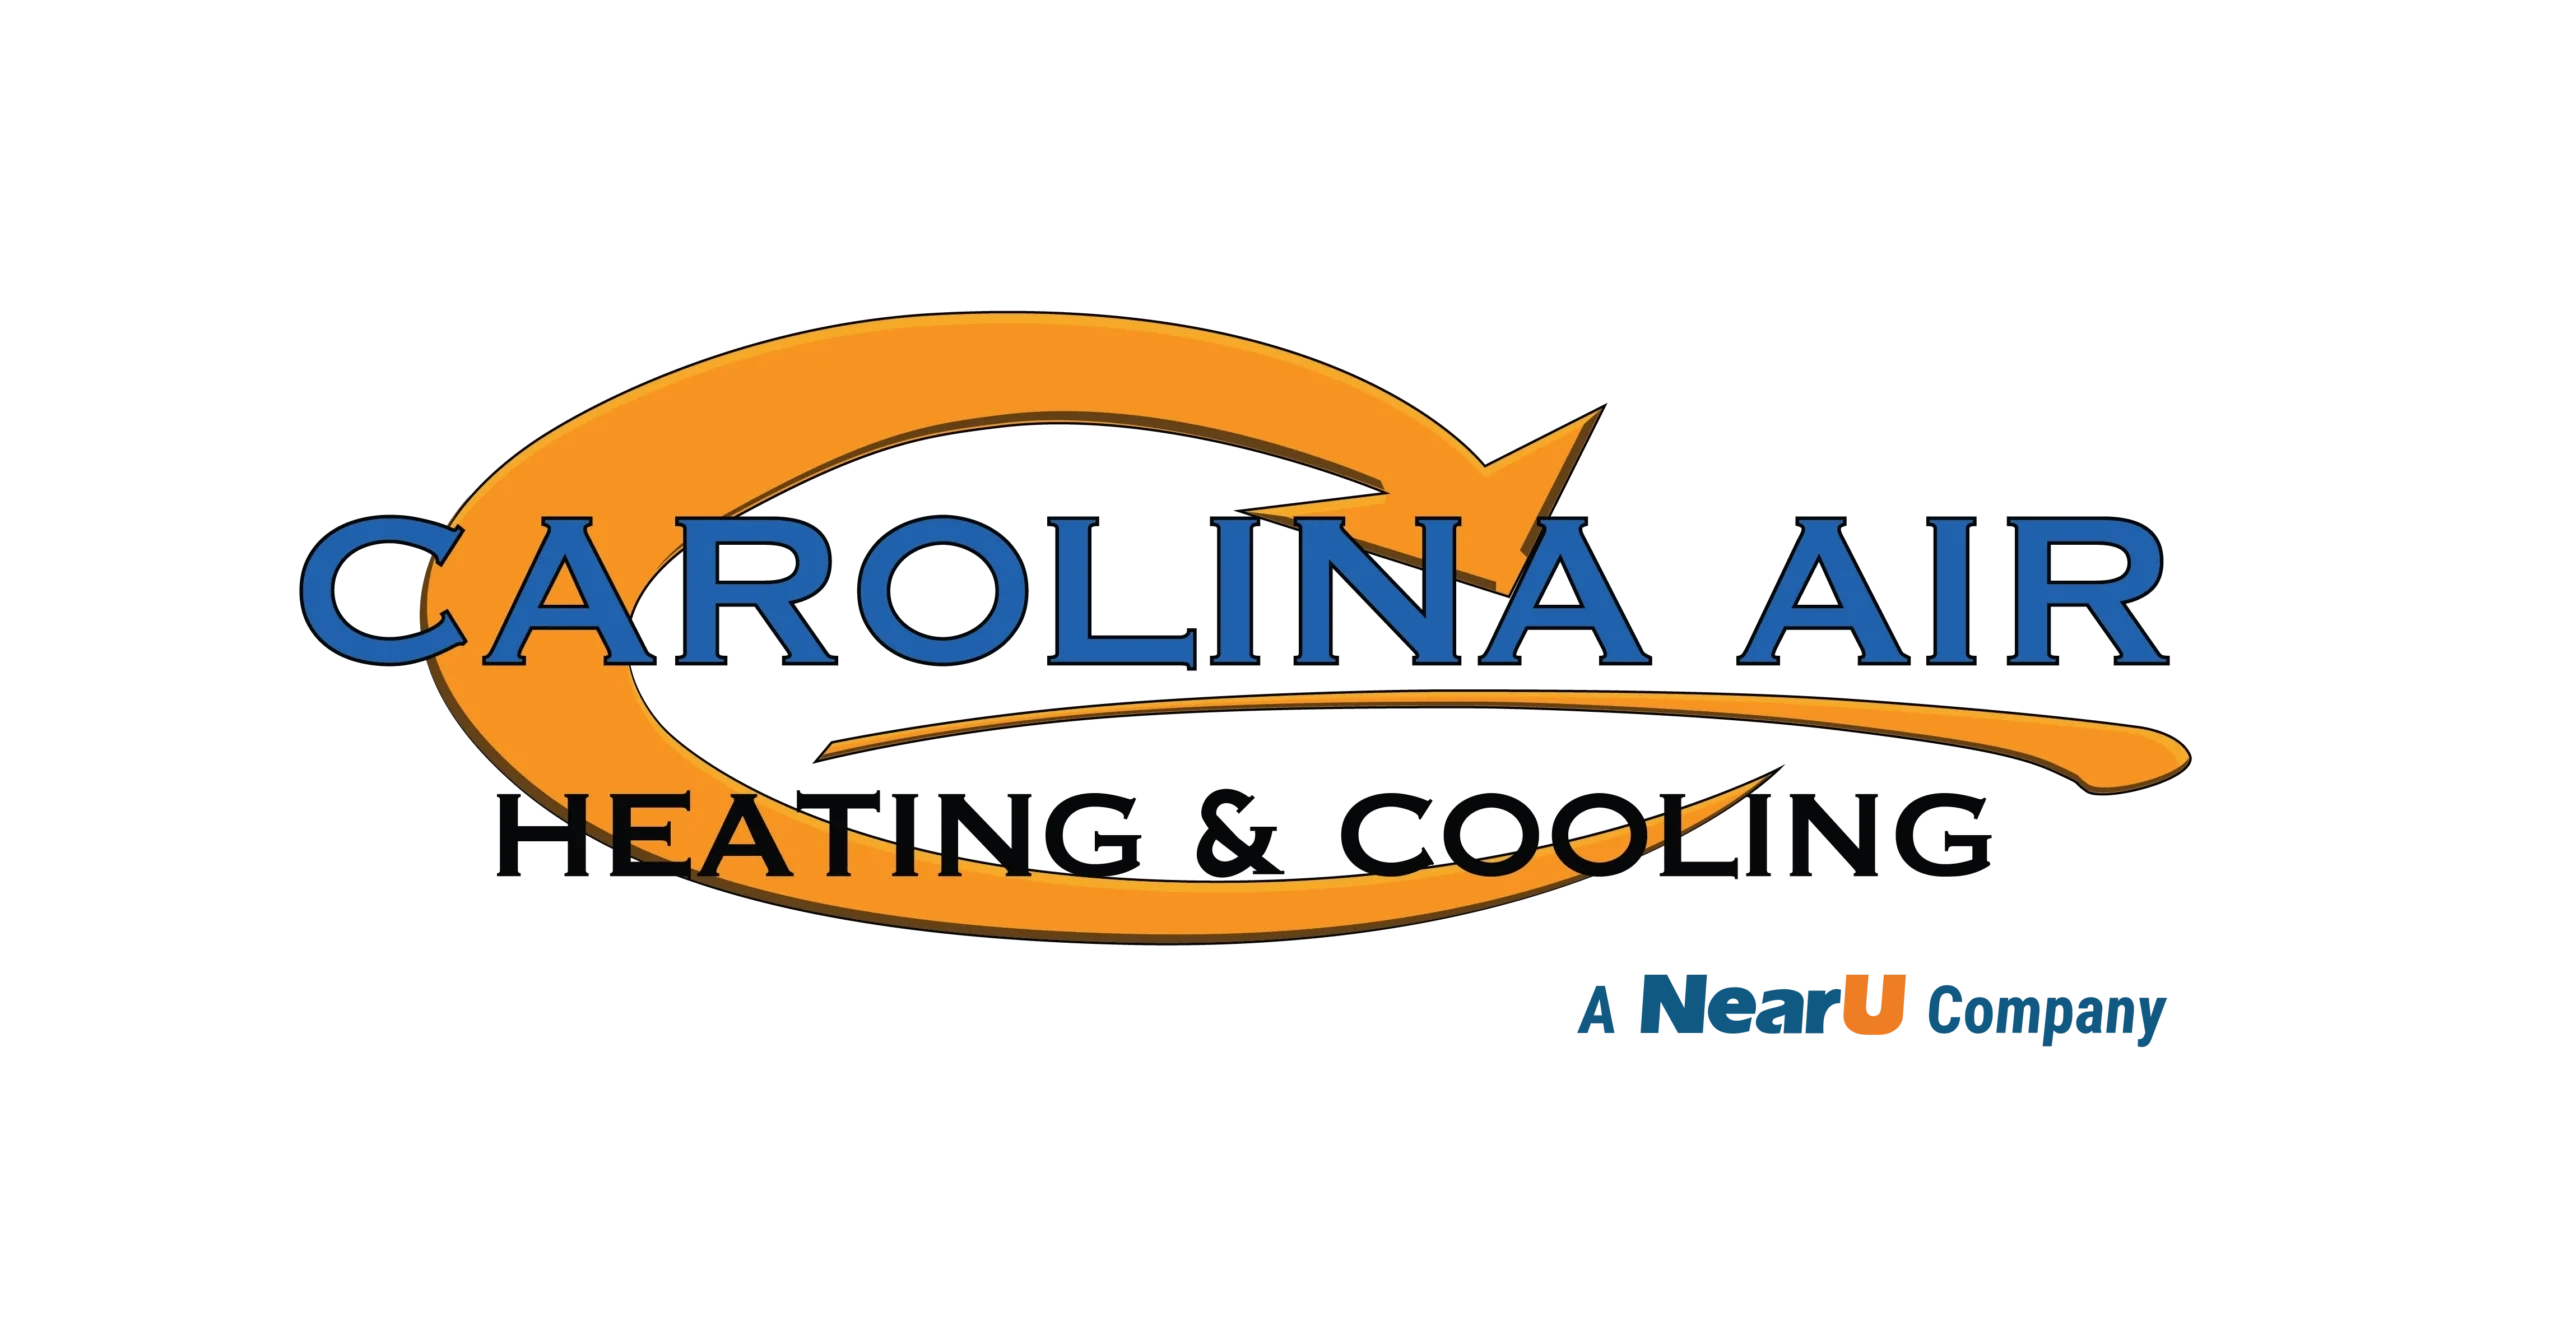 Carolina Air Logo